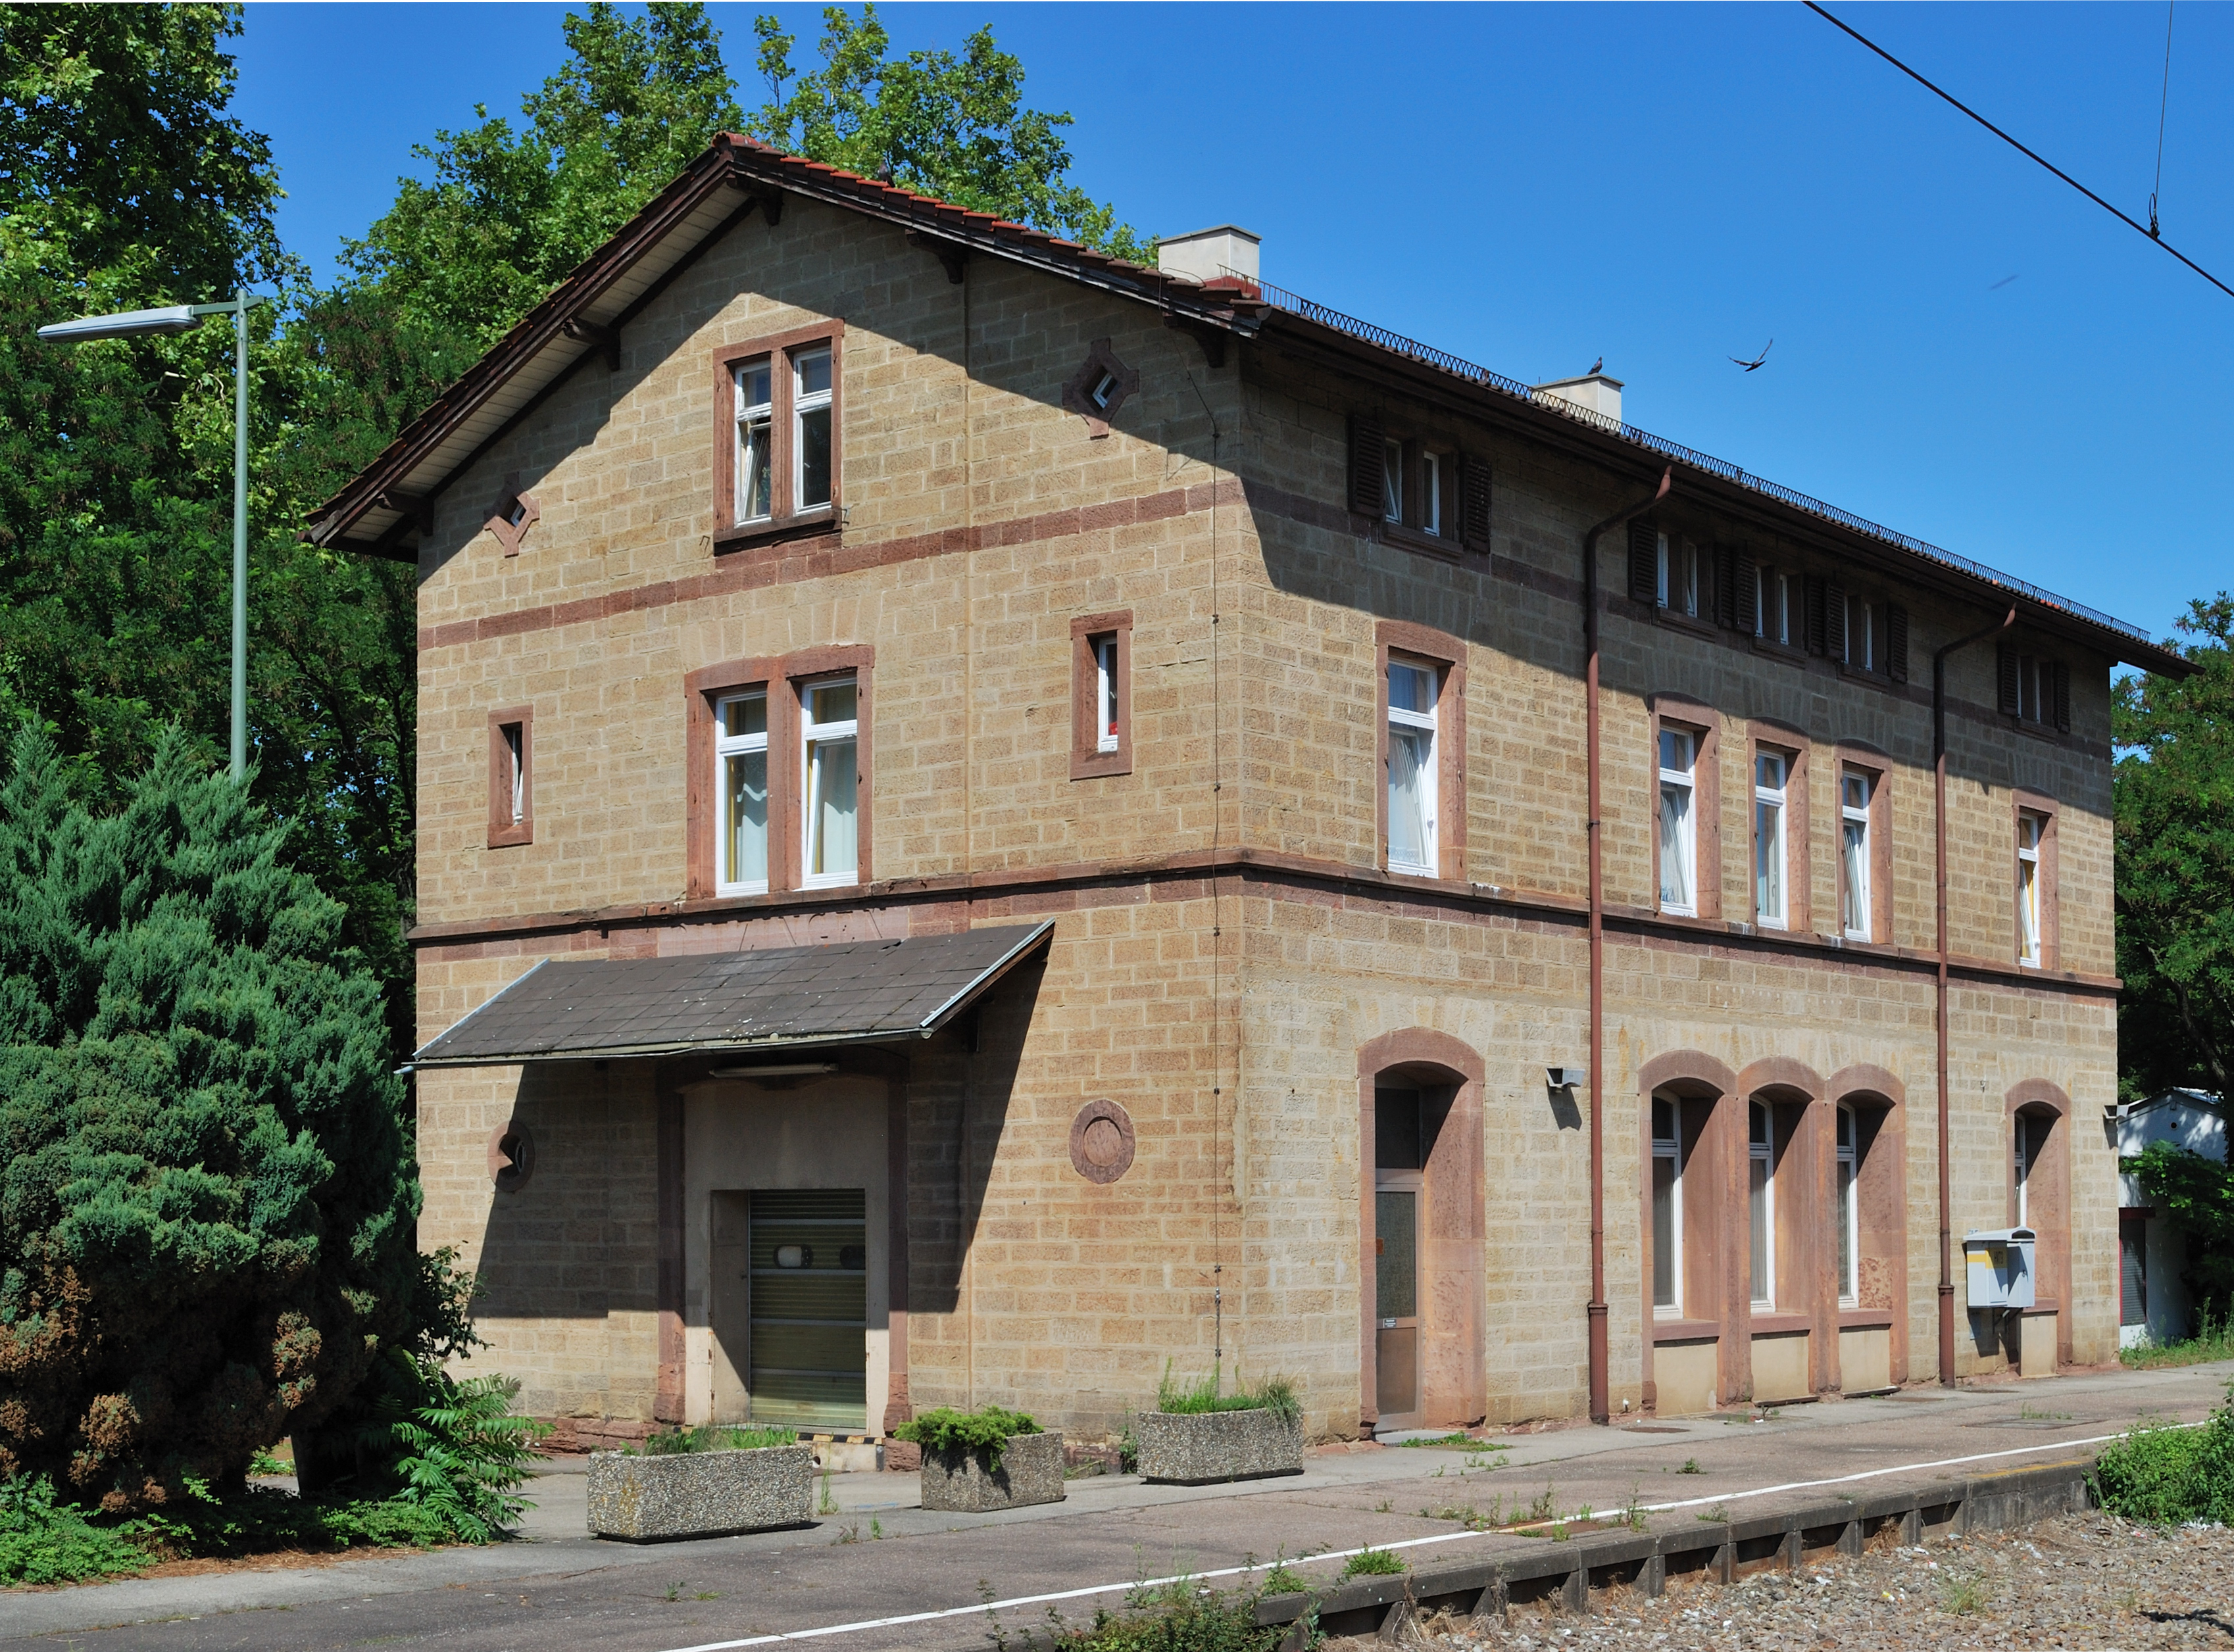 Ditzingen Bahnhof